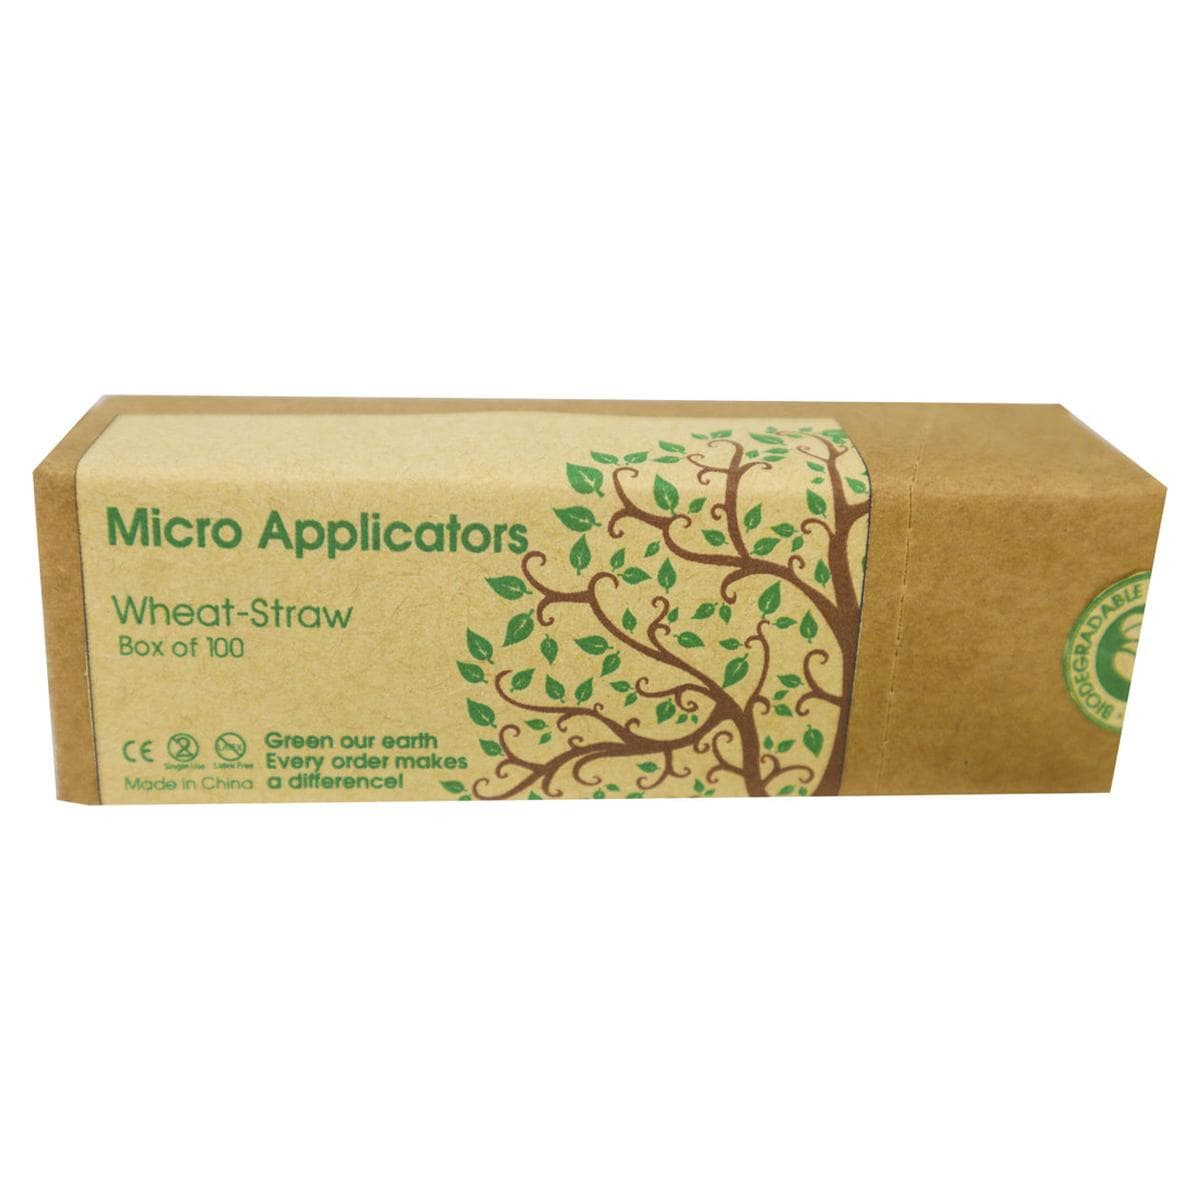 Bio Apply - Micro Applicator Tips - Superfijn (1,5 mm), geel -100 stuks